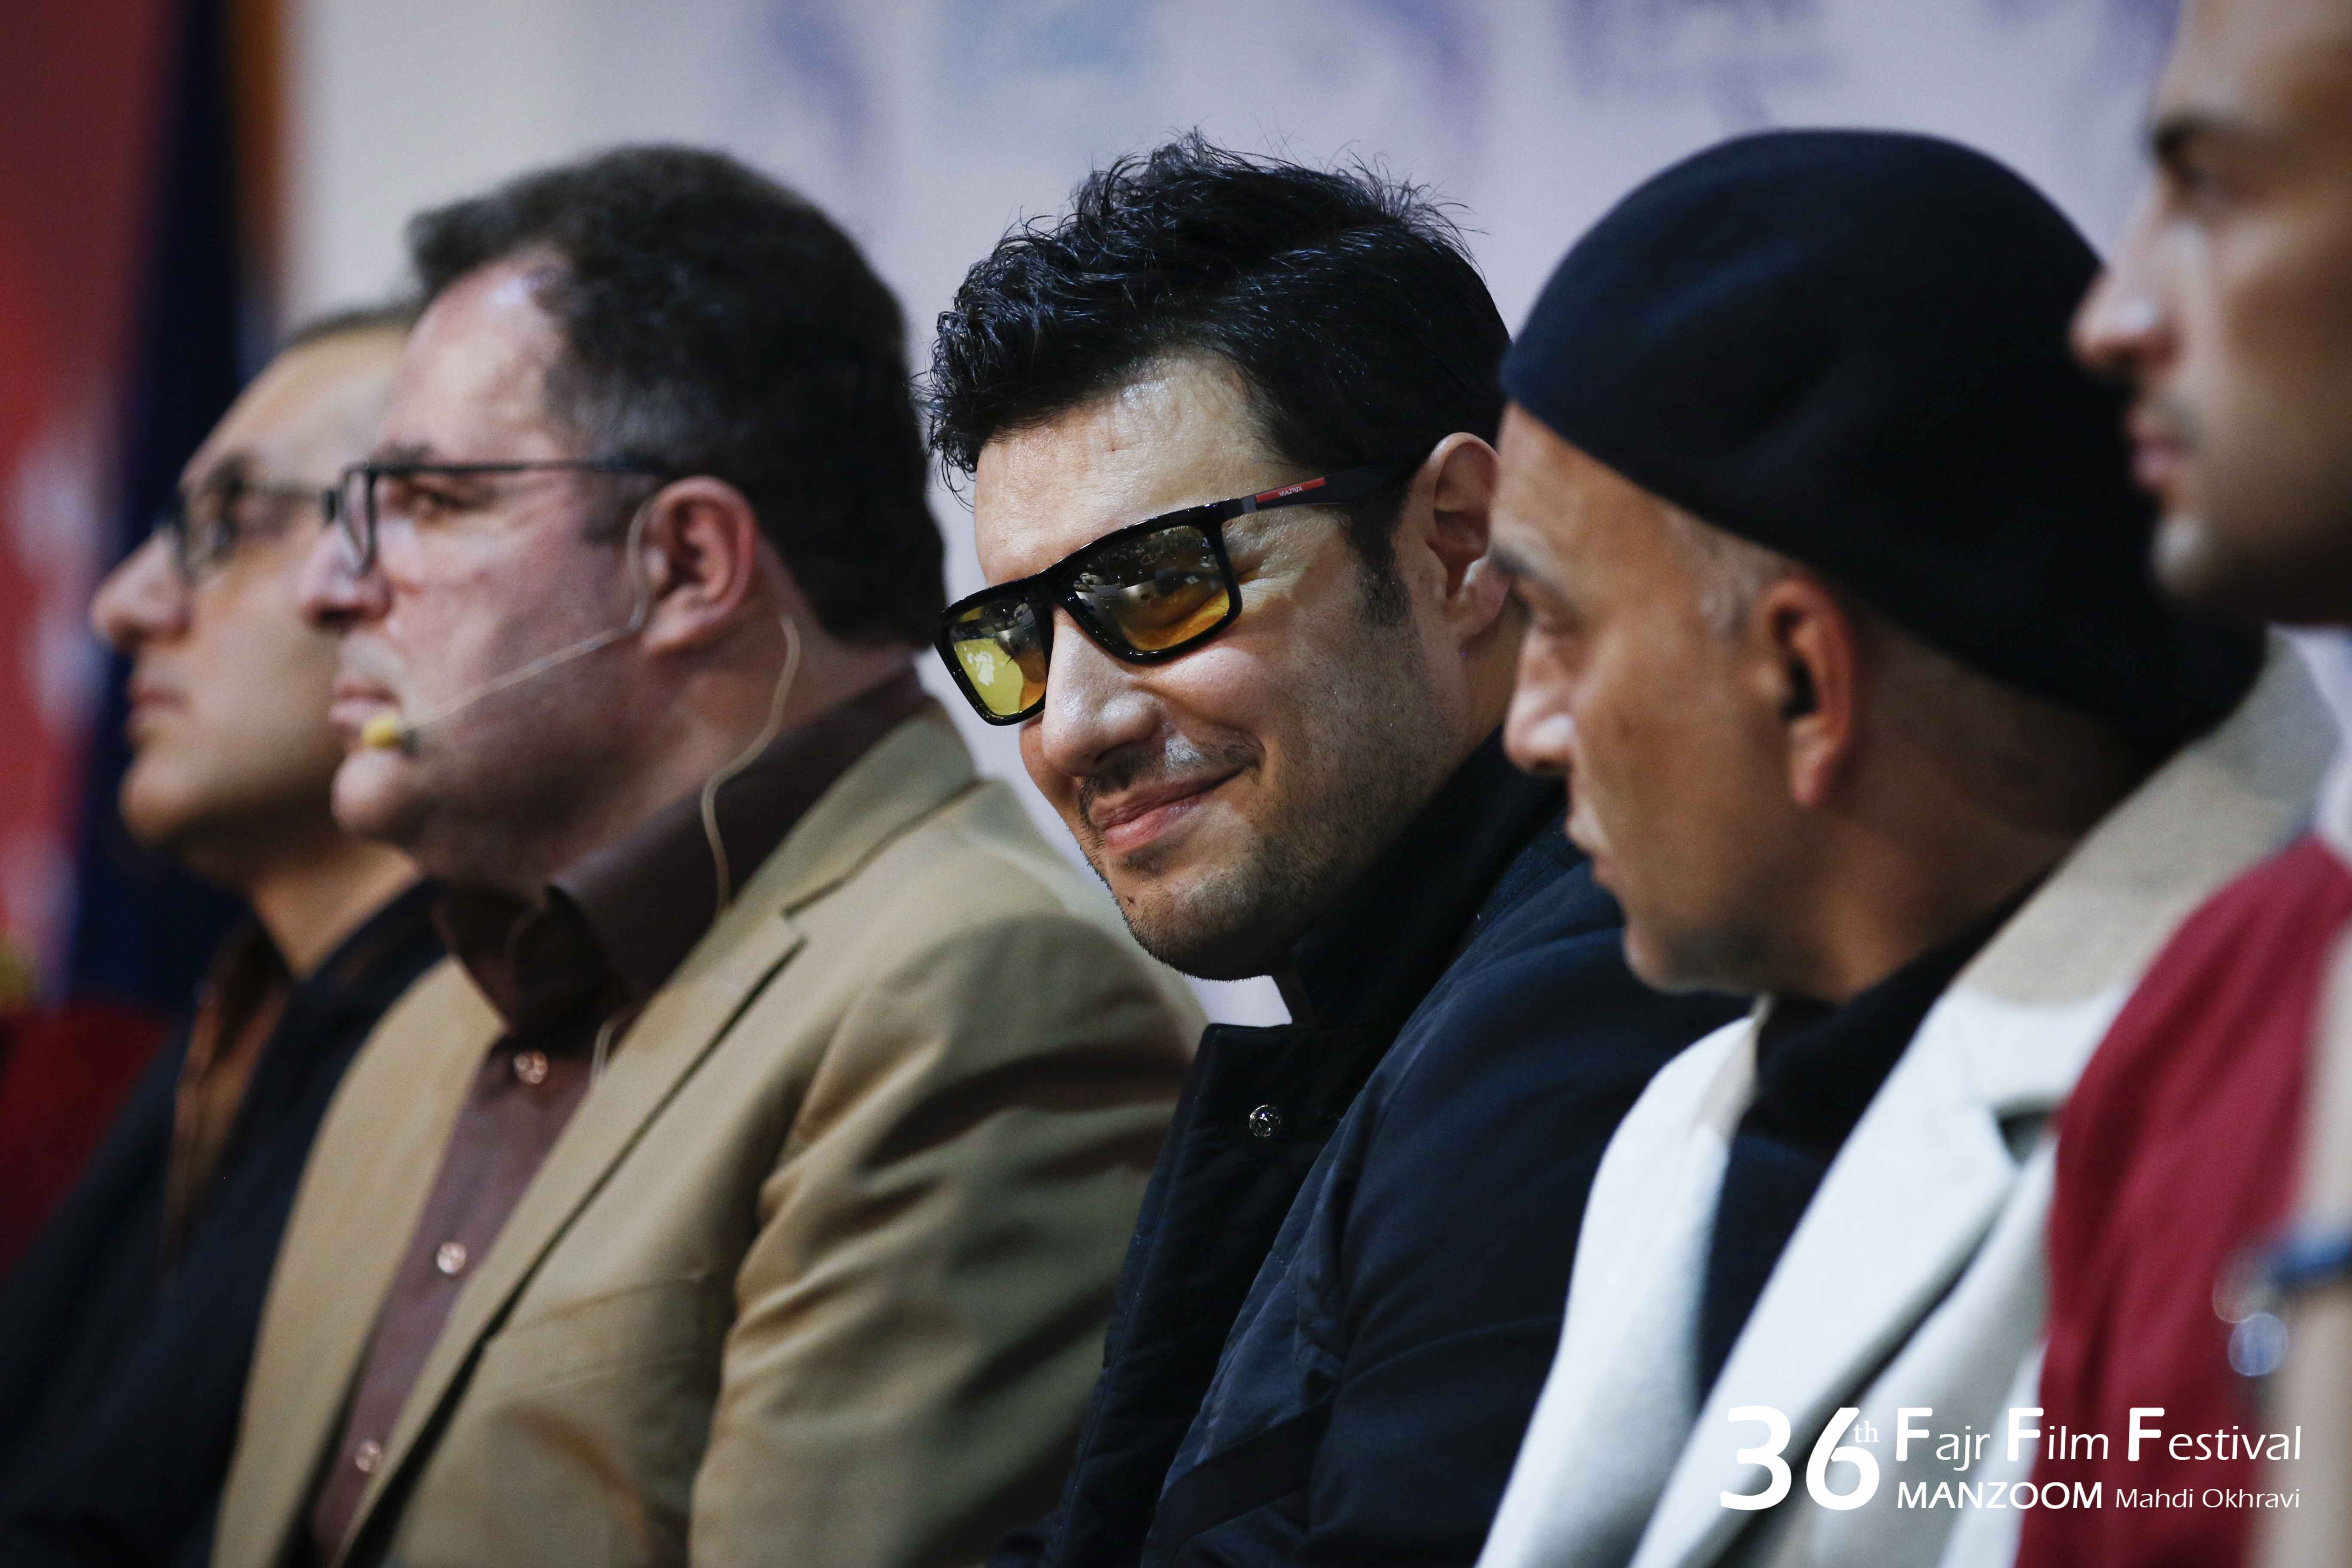 بهرام توکلی در نشست خبری فیلم سینمایی تنگه ابوقریب به همراه امیر جدیدی، جواد عزتی، حمیدرضا آذرنگ و محمود گبرلو